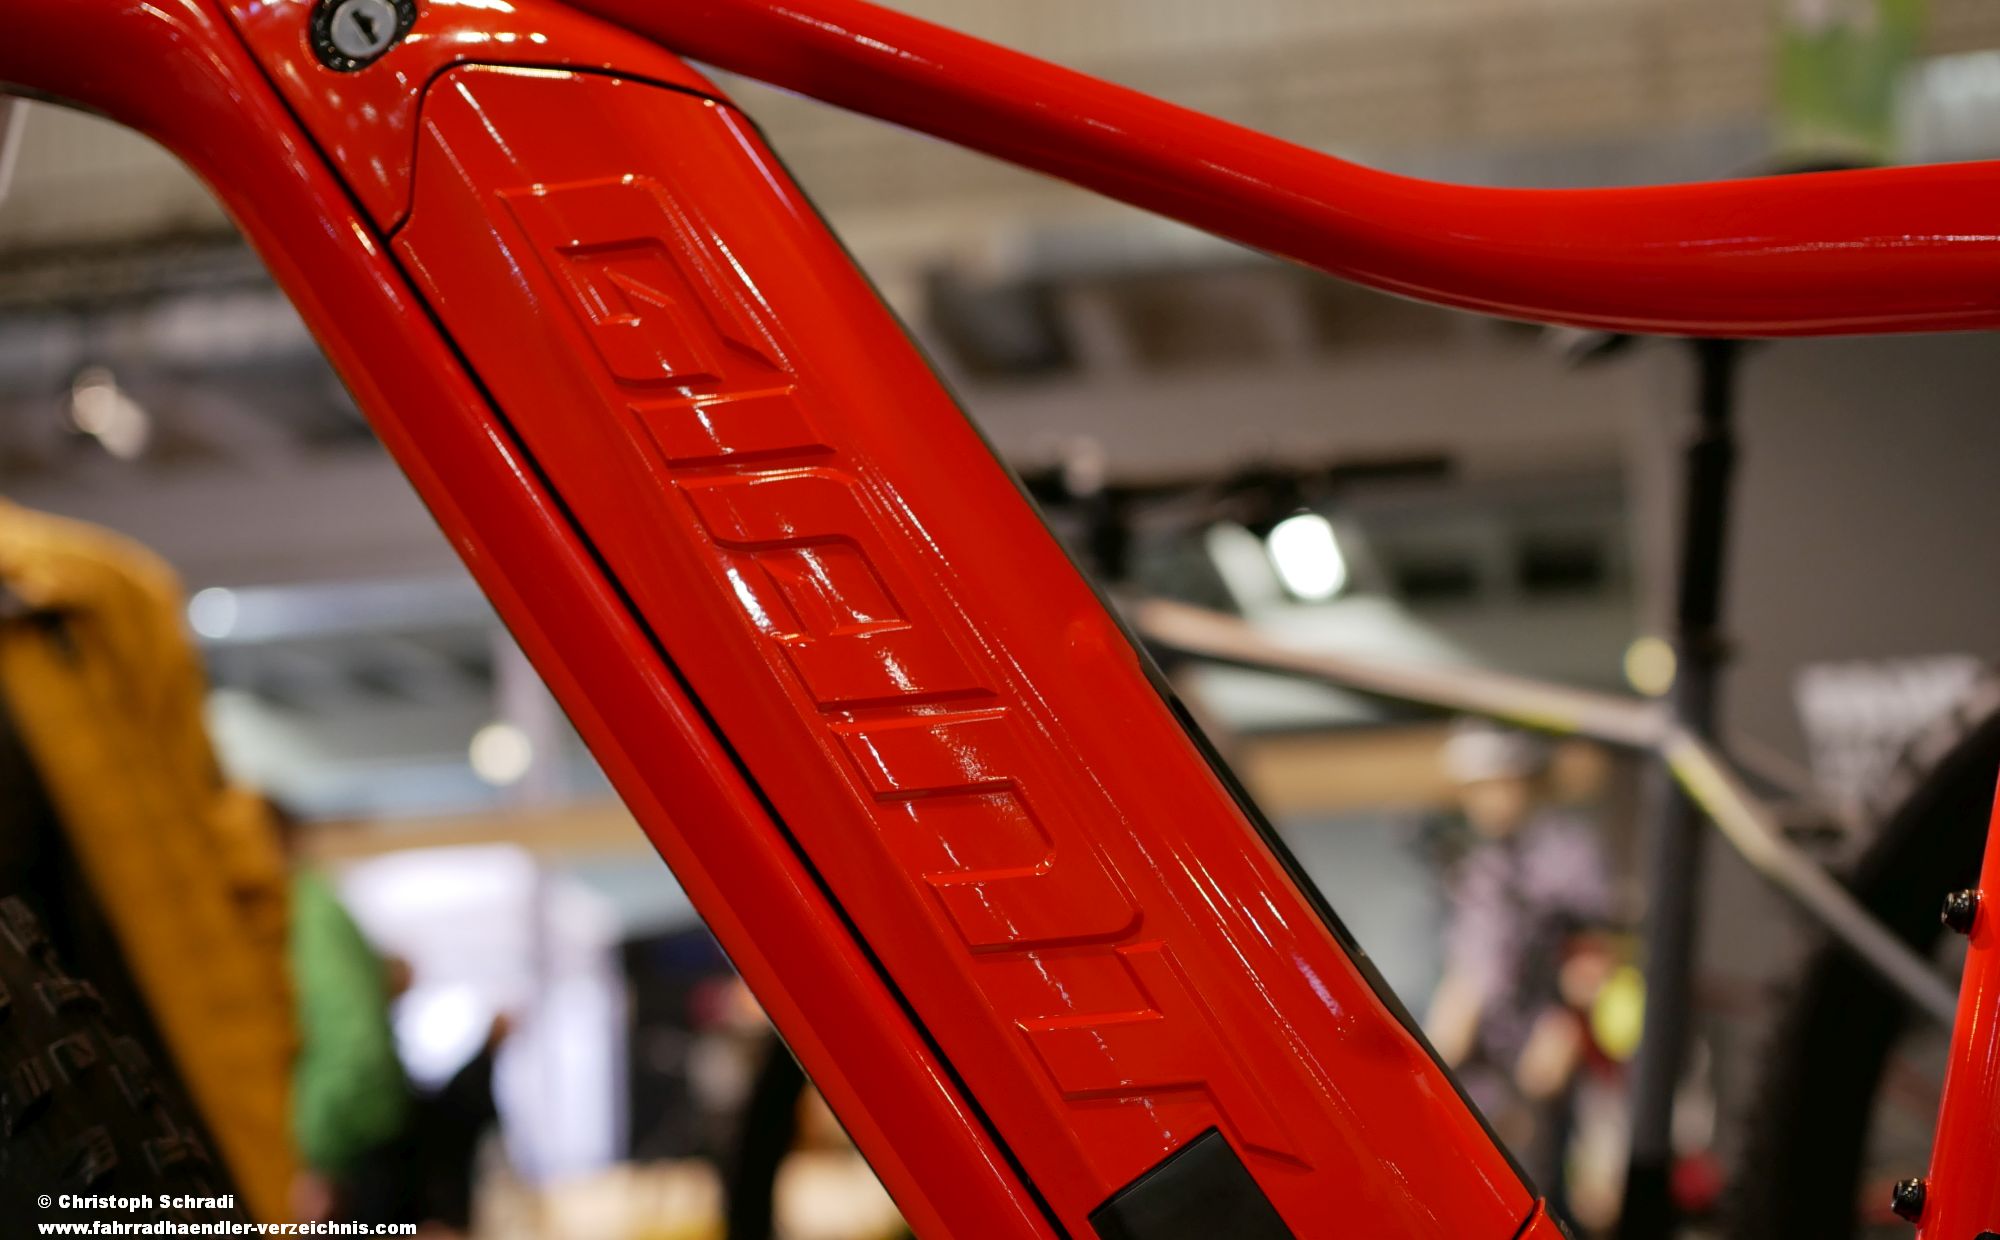 Rahmenakku von Giant - Bei Giants Yamaha E-Bikes (Syncdrive) setzt man schon seit einigen Jahren auf in den Rahmen integrierte Akkus